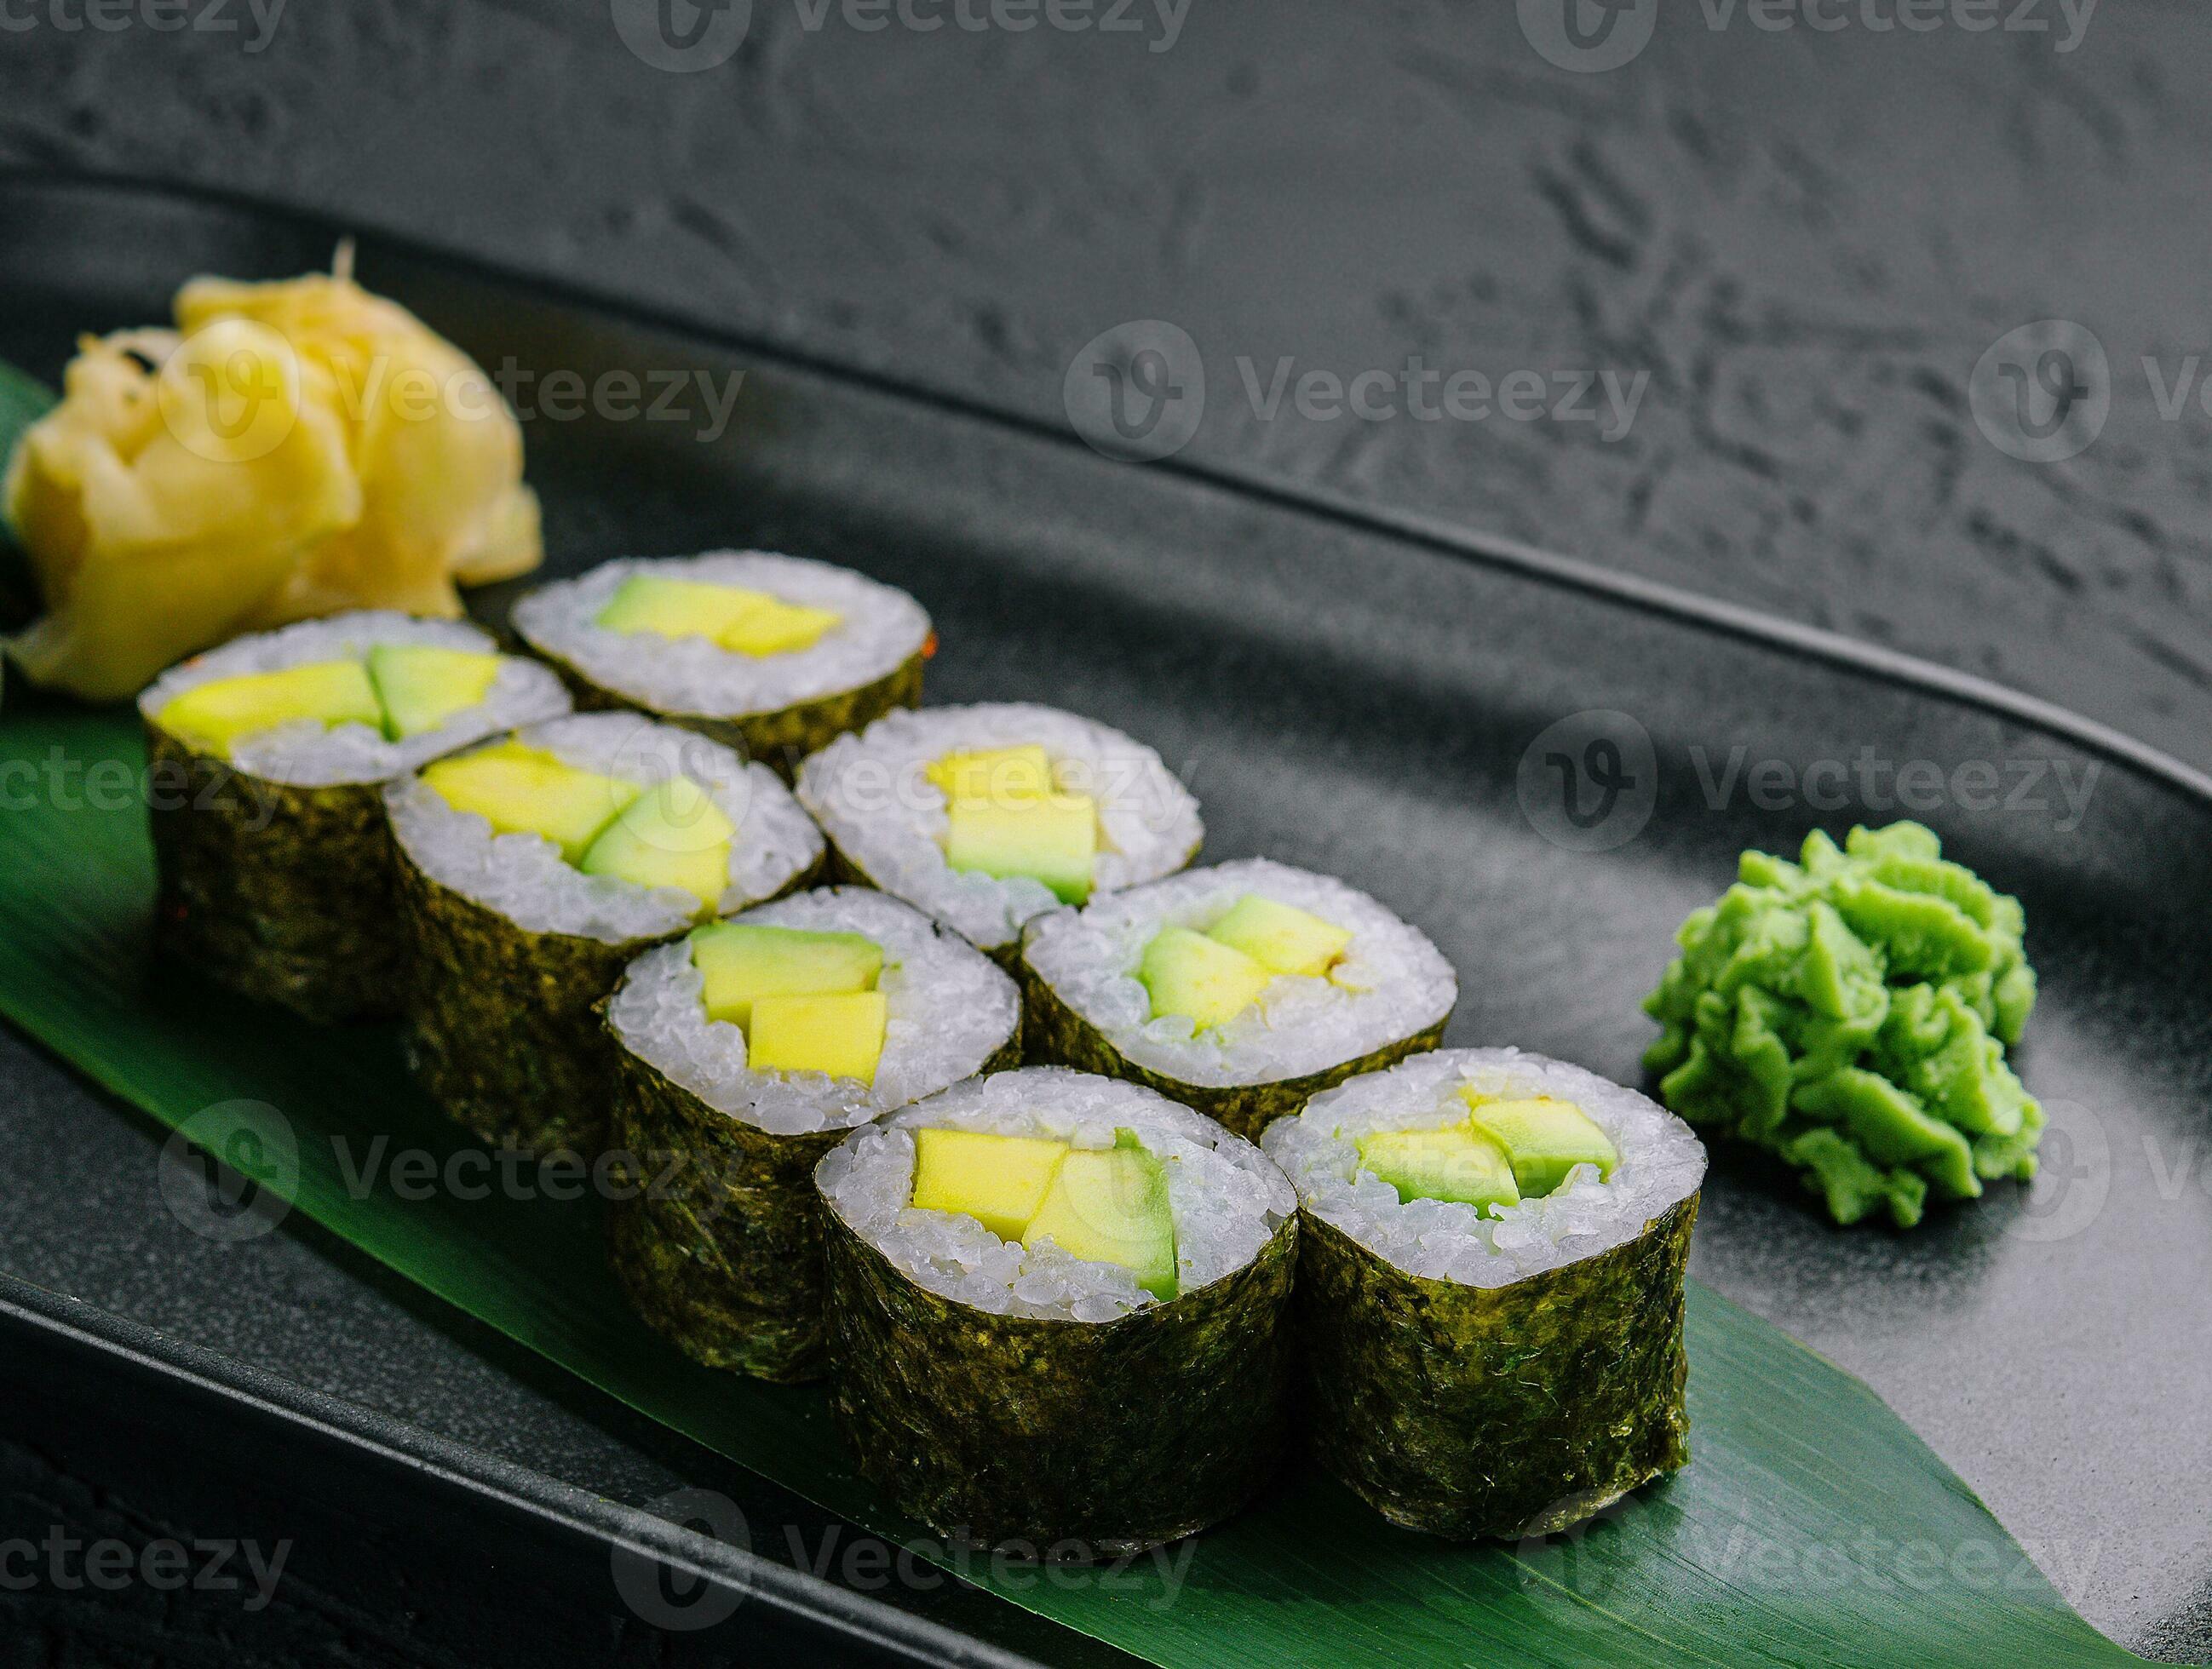 https://static.vecteezy.com/ti/photos-gratuite/p2/31754258-maki-sushi-rouleau-avec-avocat-sur-noir-assiette-photo.jpg